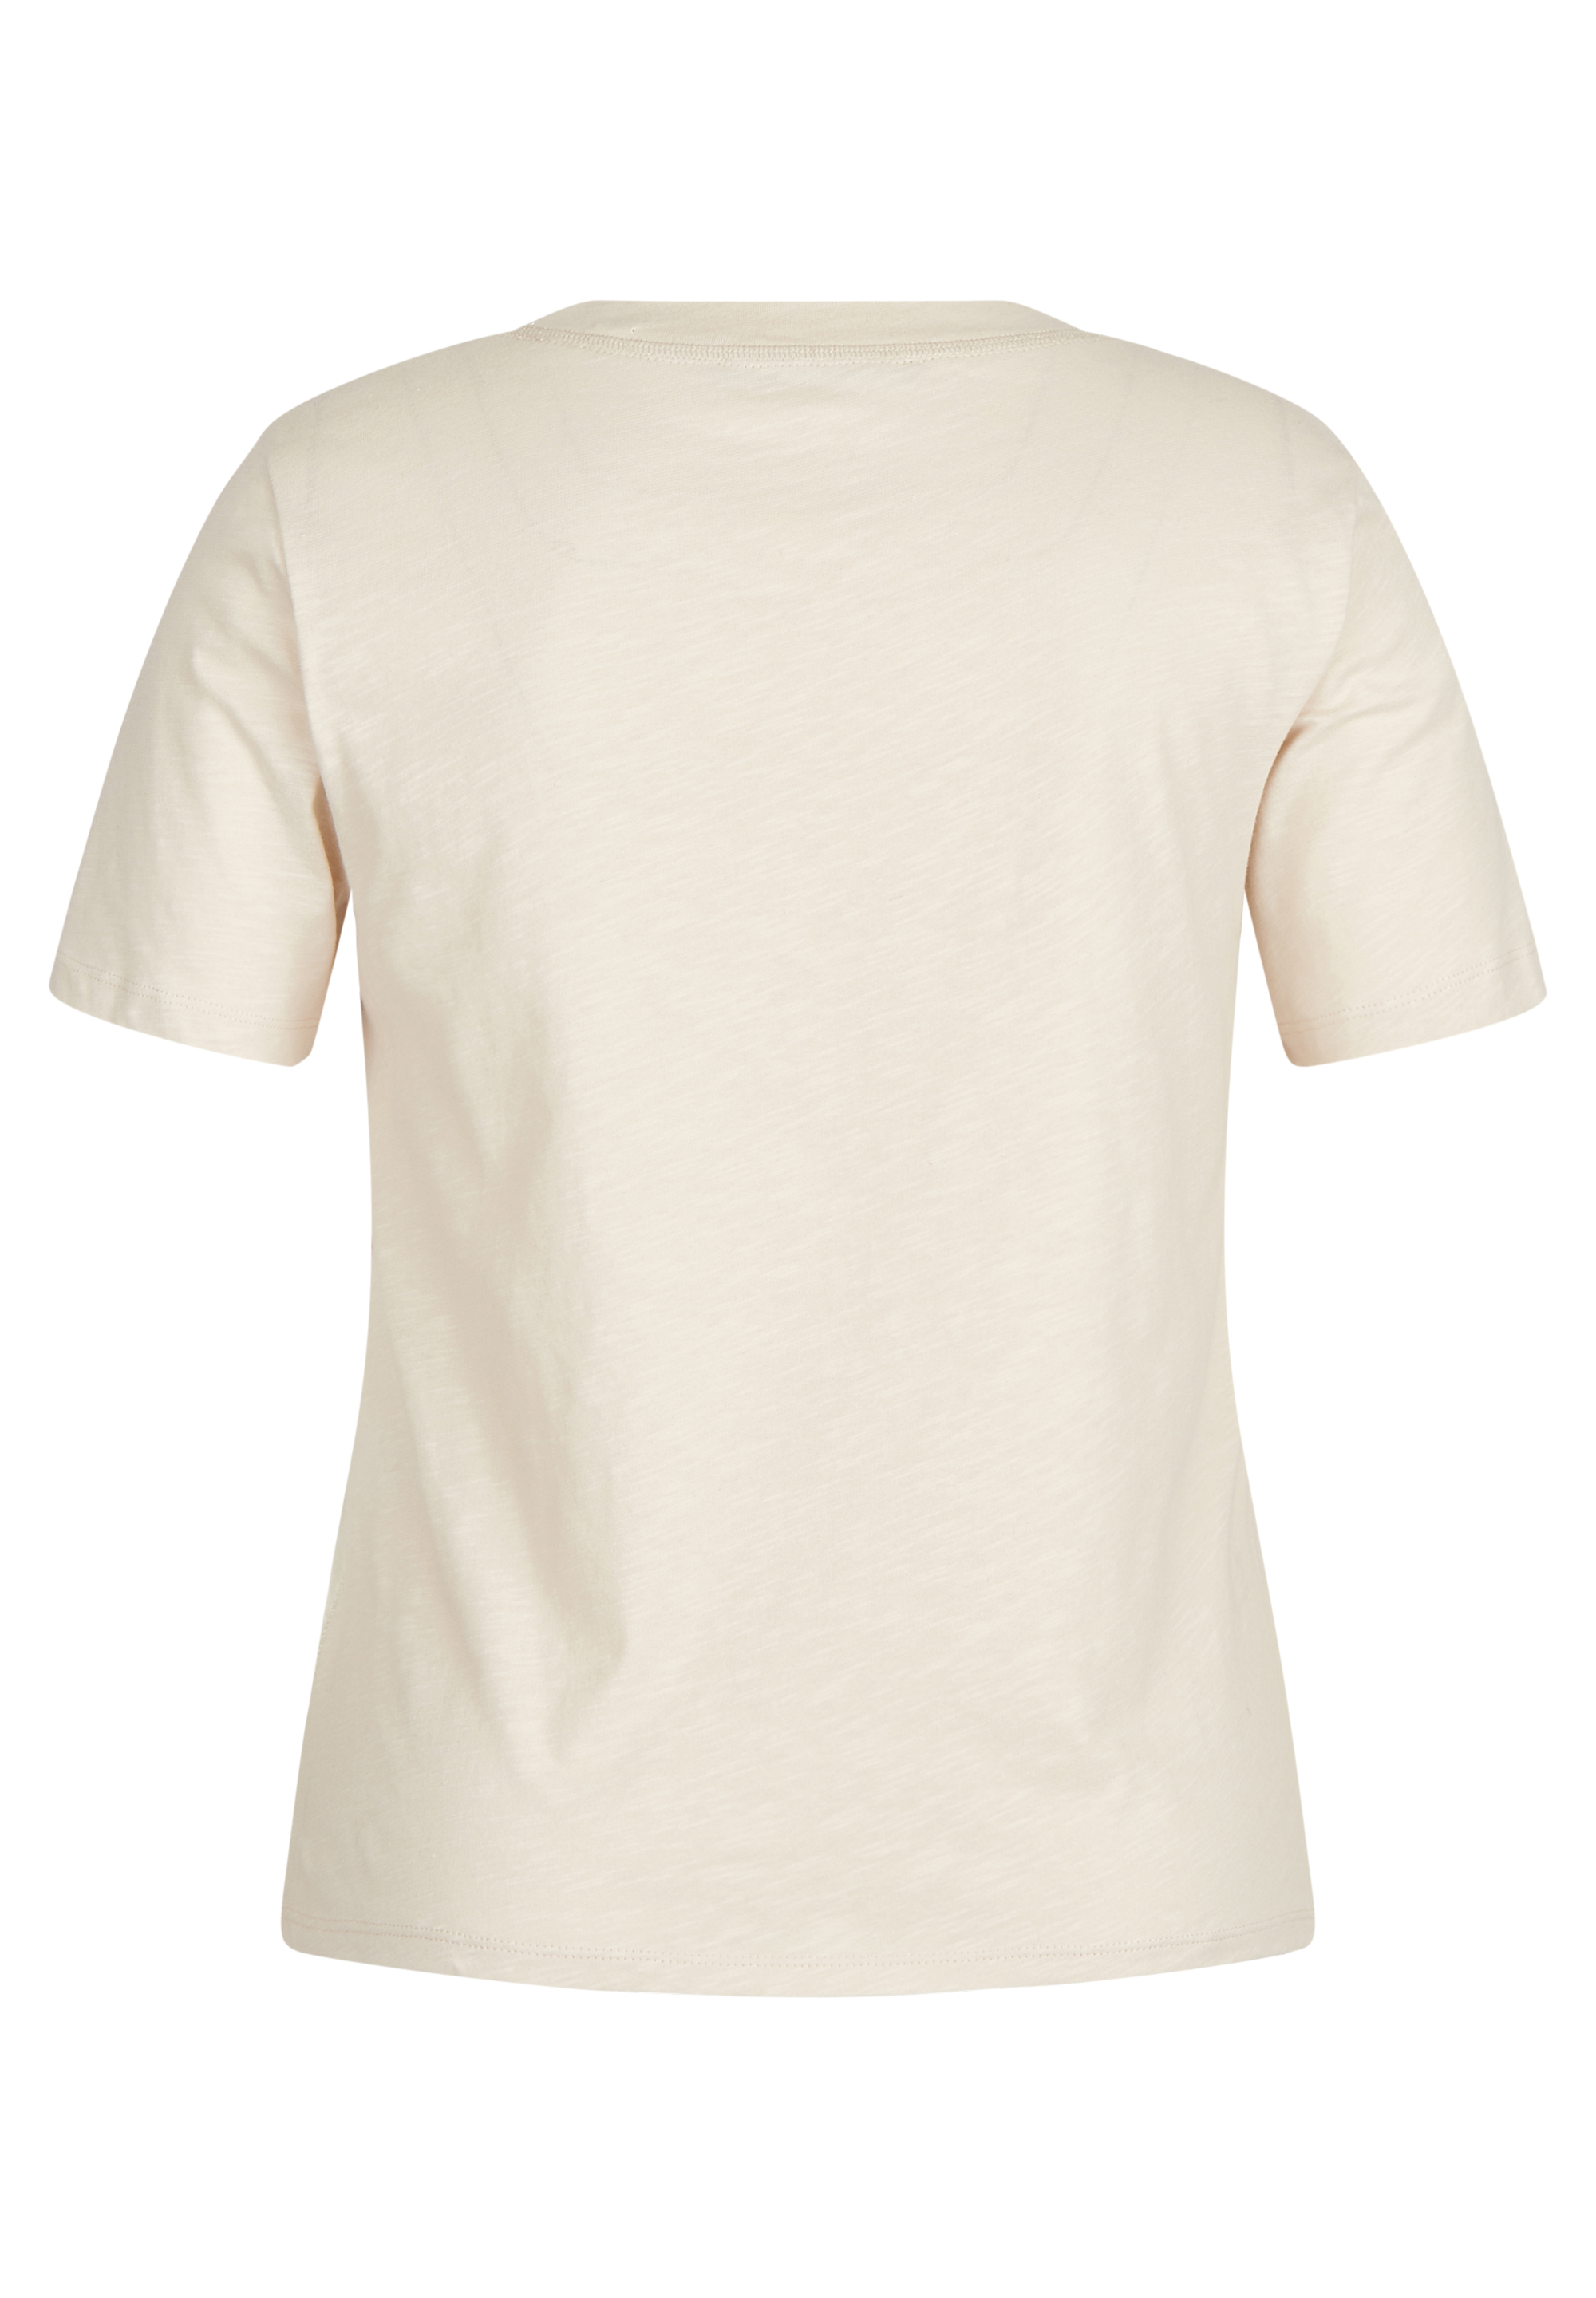 T-Shirt mit Front-Print und Wording